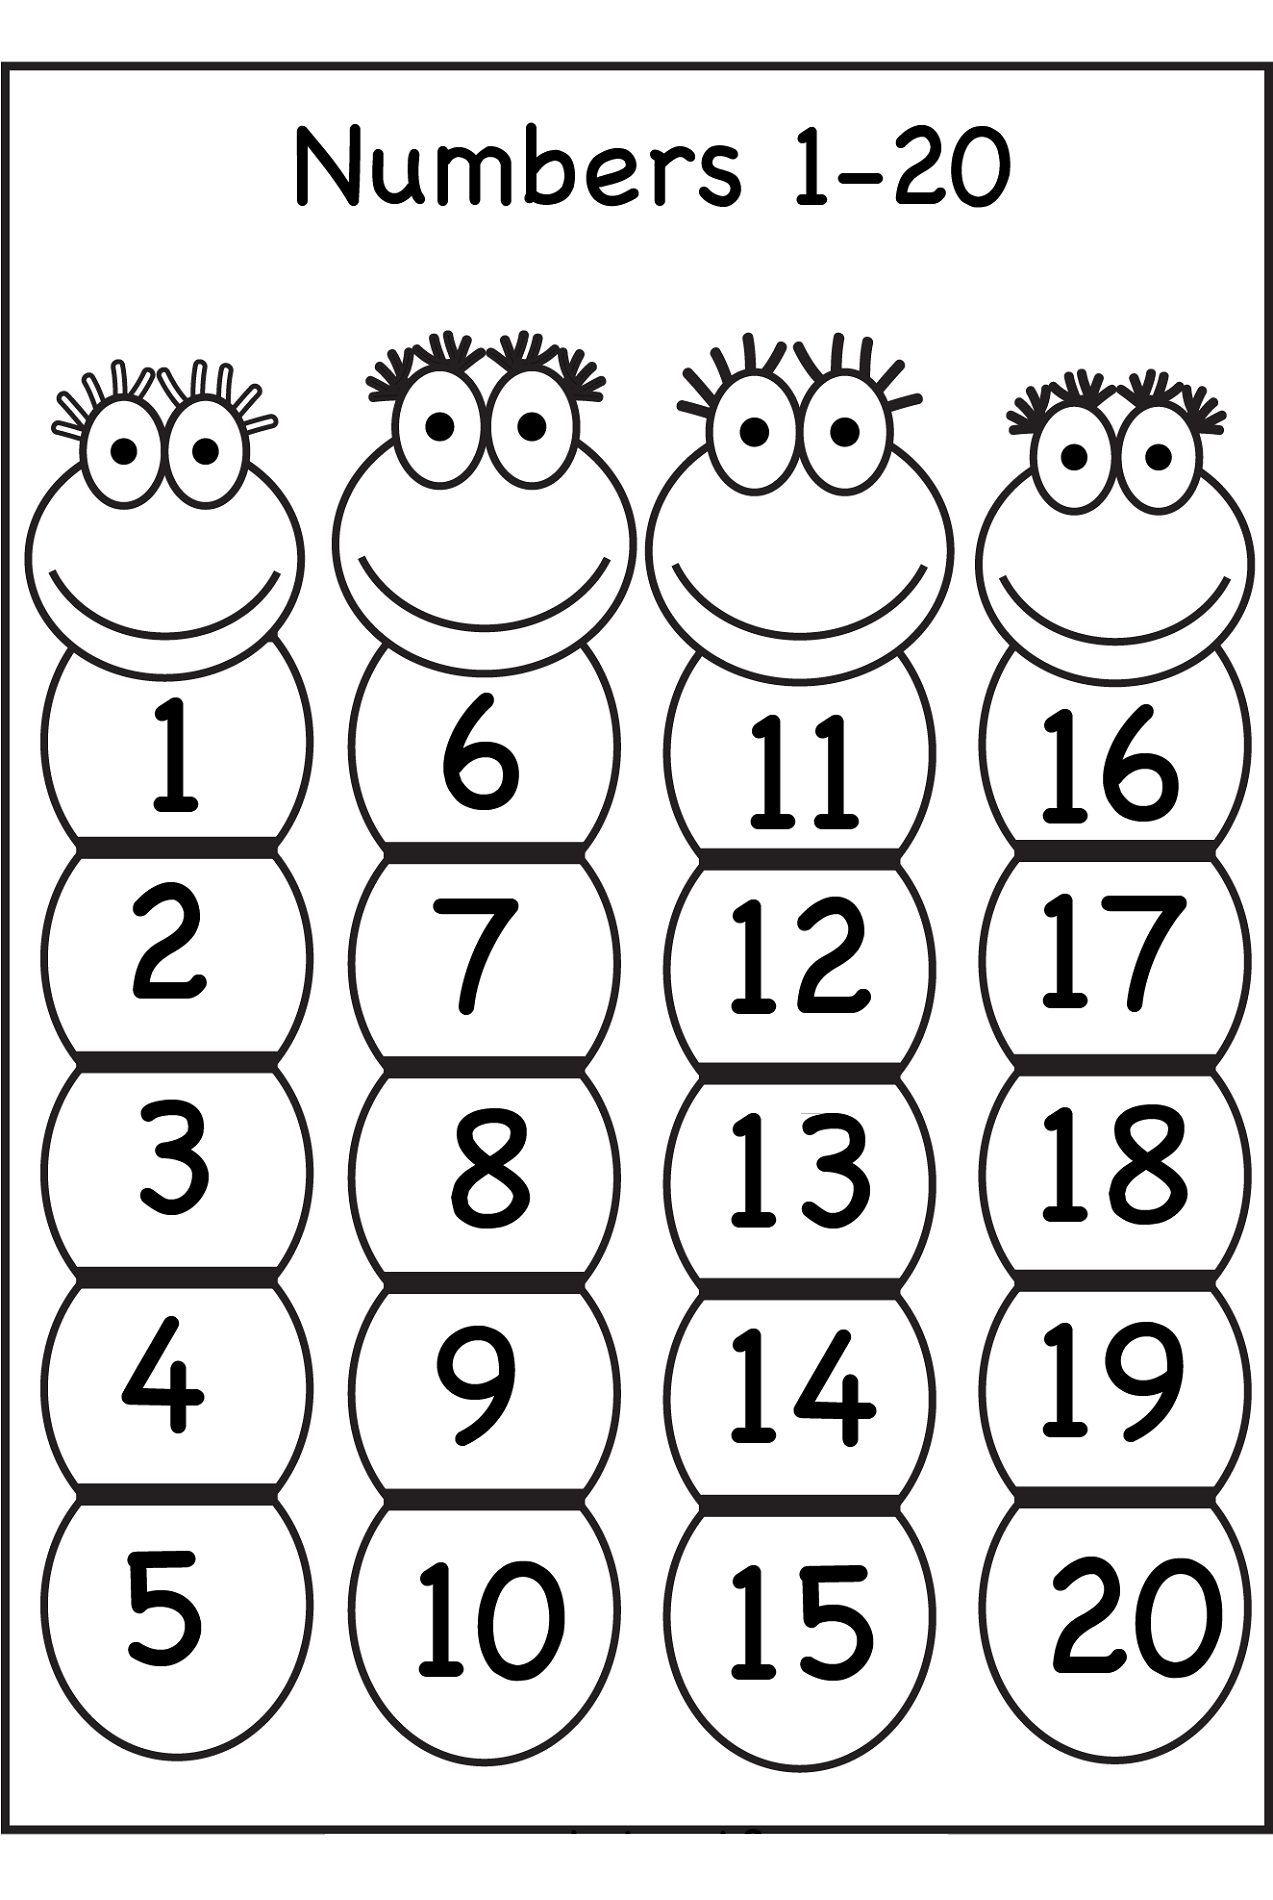 number-counting-worksheets-kindergarten-worksheets-numbers-0-10